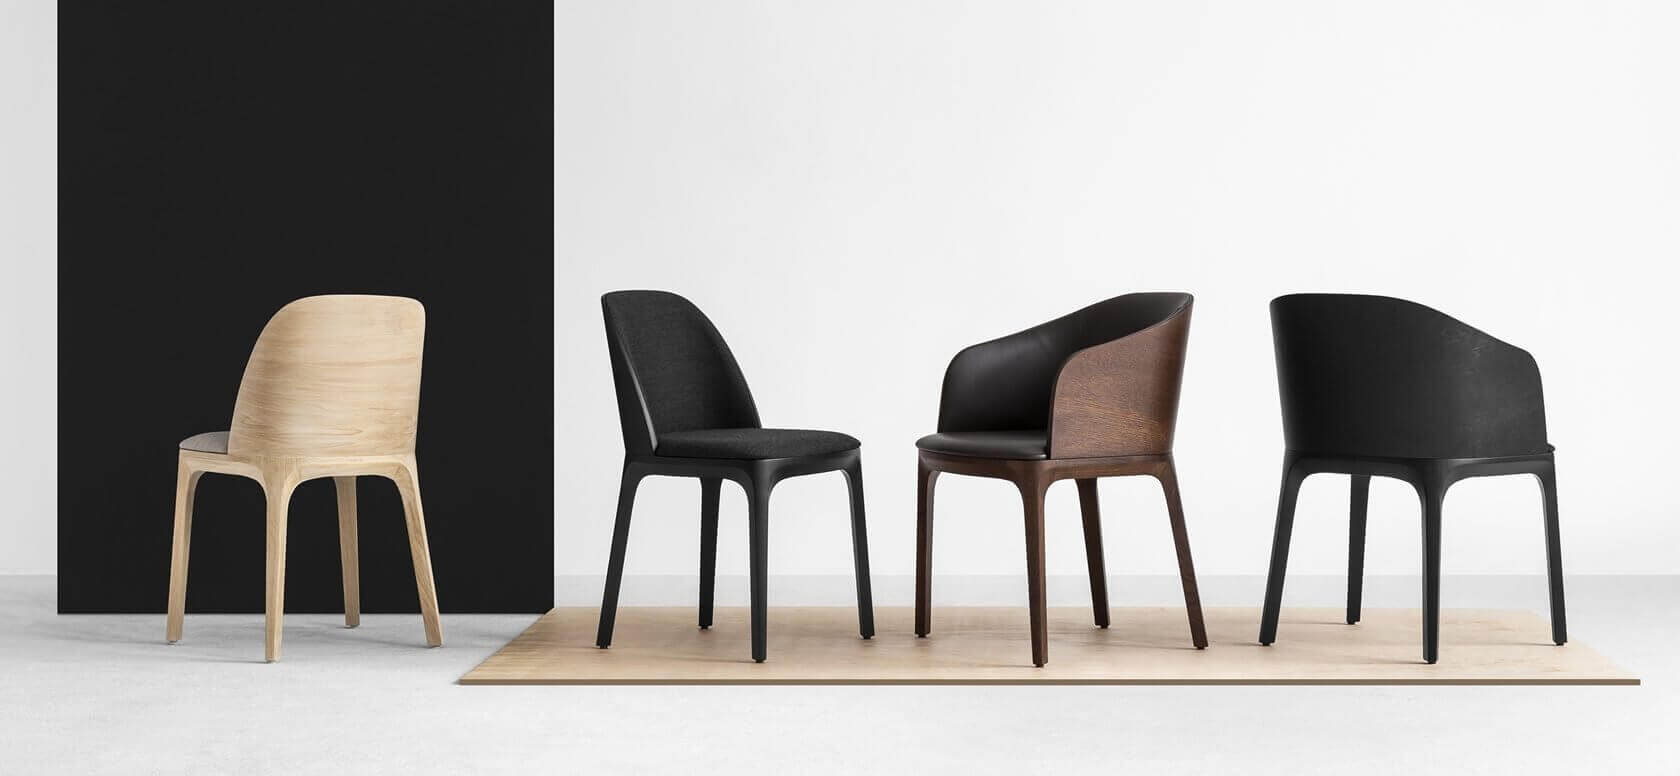 Monochromatyczna grafika przedstawia czarne krzesła w drewnianej, ciemnobrązowej ramie na białym tle oraz jedno krzesło z tego samego modelu w kolorze kremowym na czarnym tle. Grafika jest spójna i ciekawa.